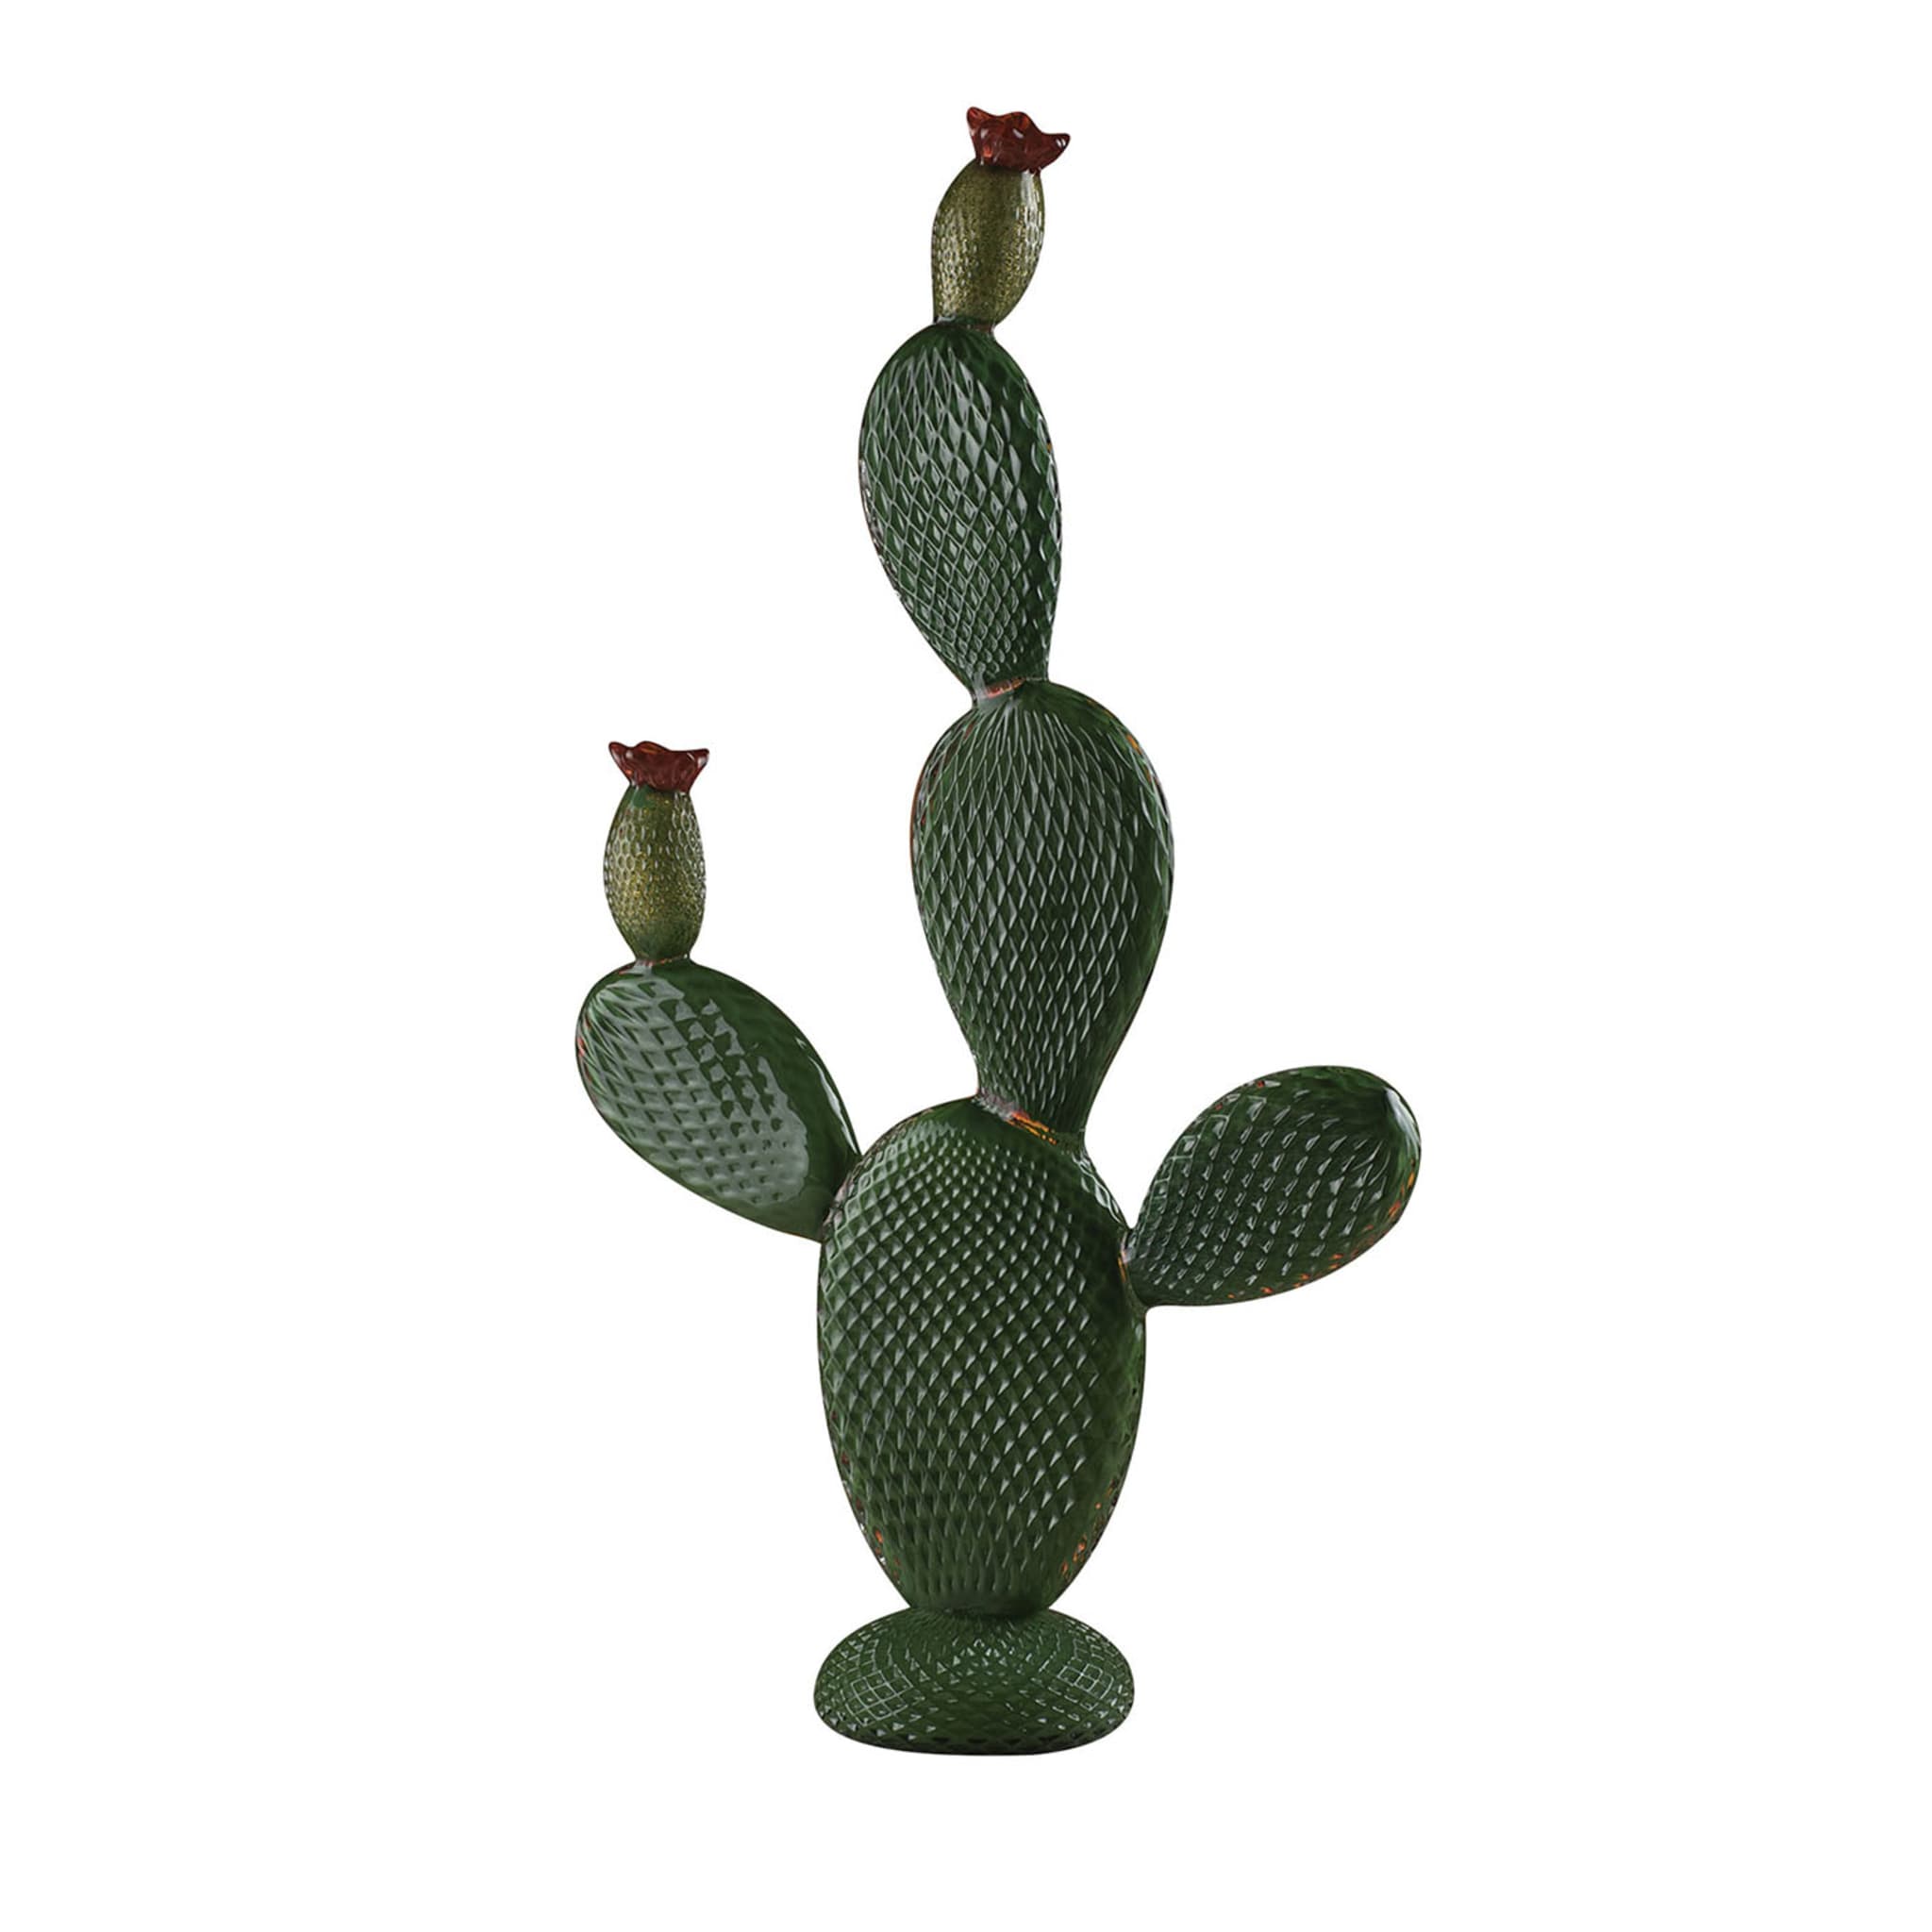 Sculpture de cactus vert géant - Vue principale